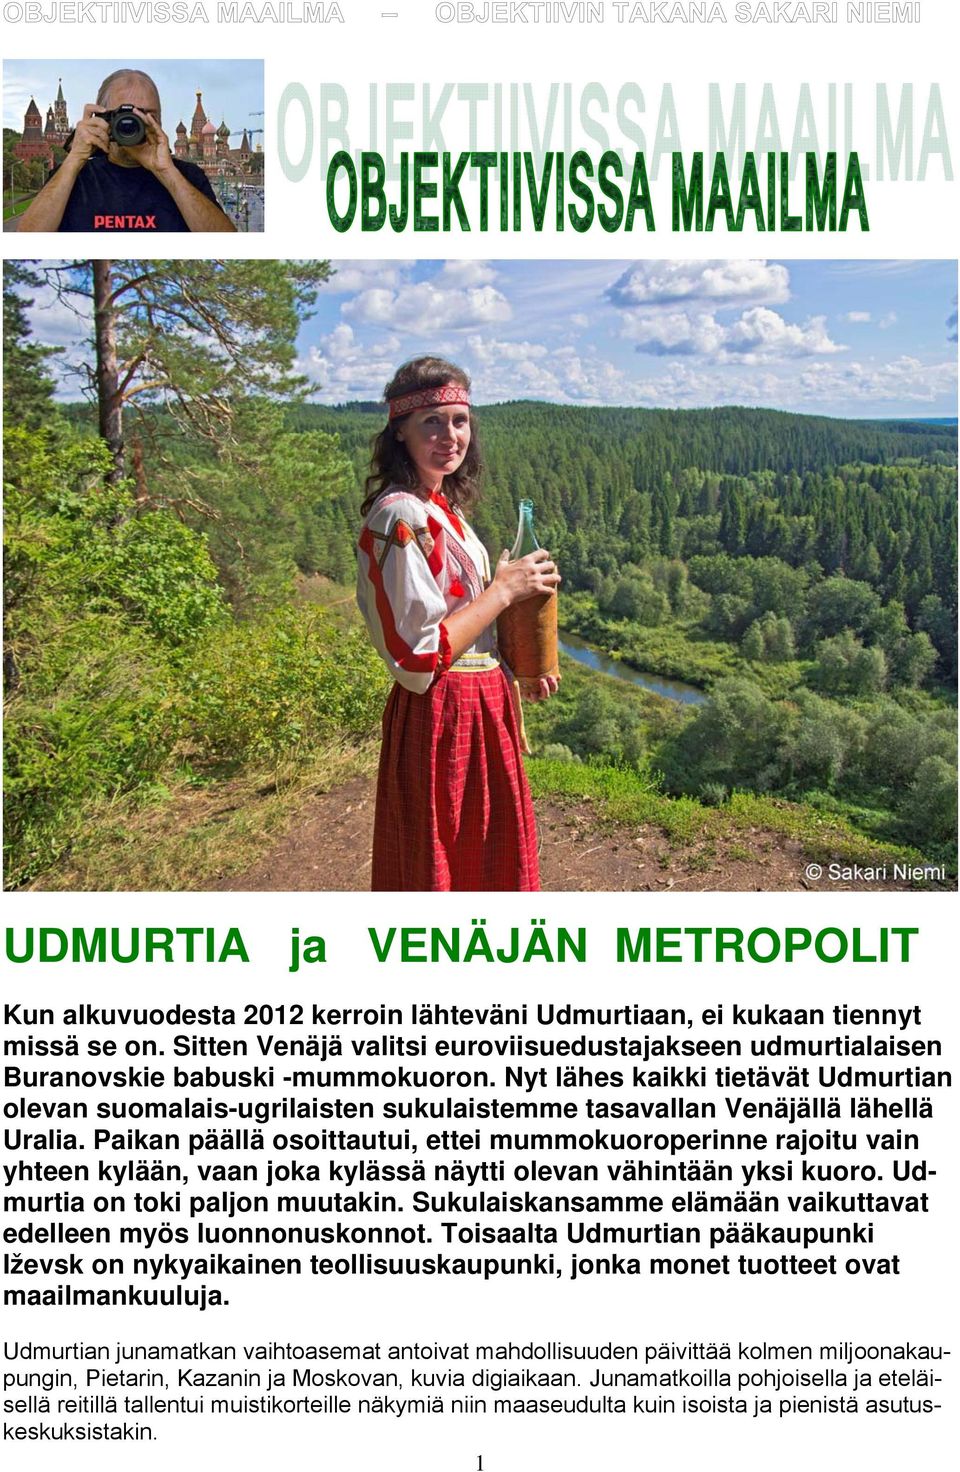 Nyt lähes kaikki tietävät Udmurtian olevan suomalais-ugrilaisten sukulaistemme tasavallan Venäjällä lähellä Uralia.